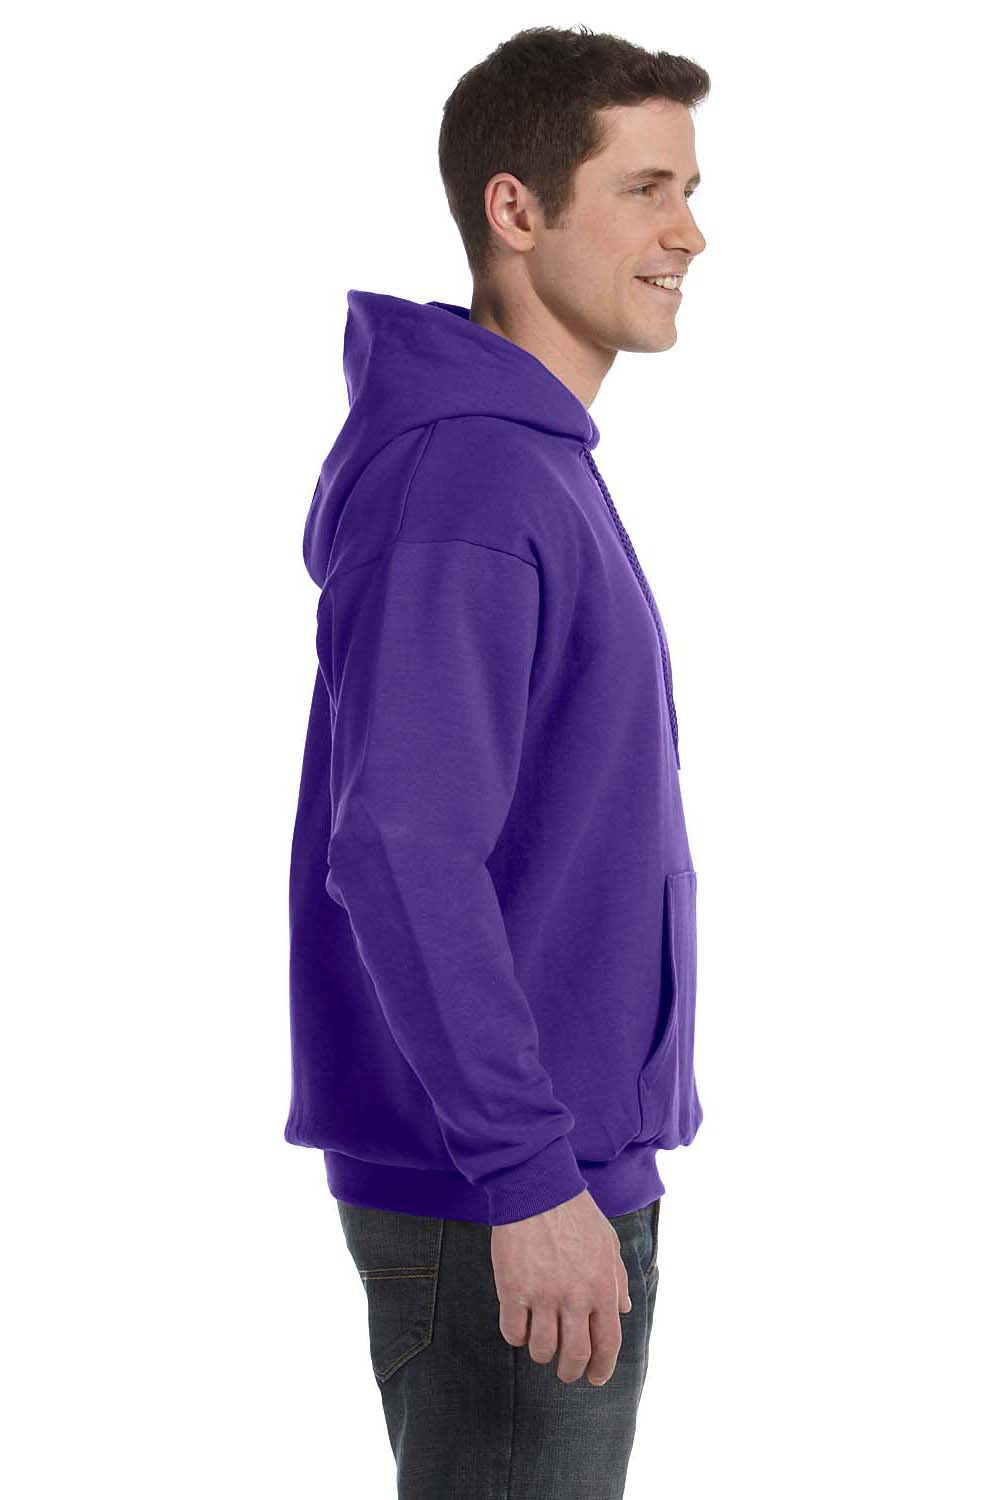 Hanes P170 Mens EcoSmart Print Pro XP Hooded Sweatshirt Hoodie Purple Side